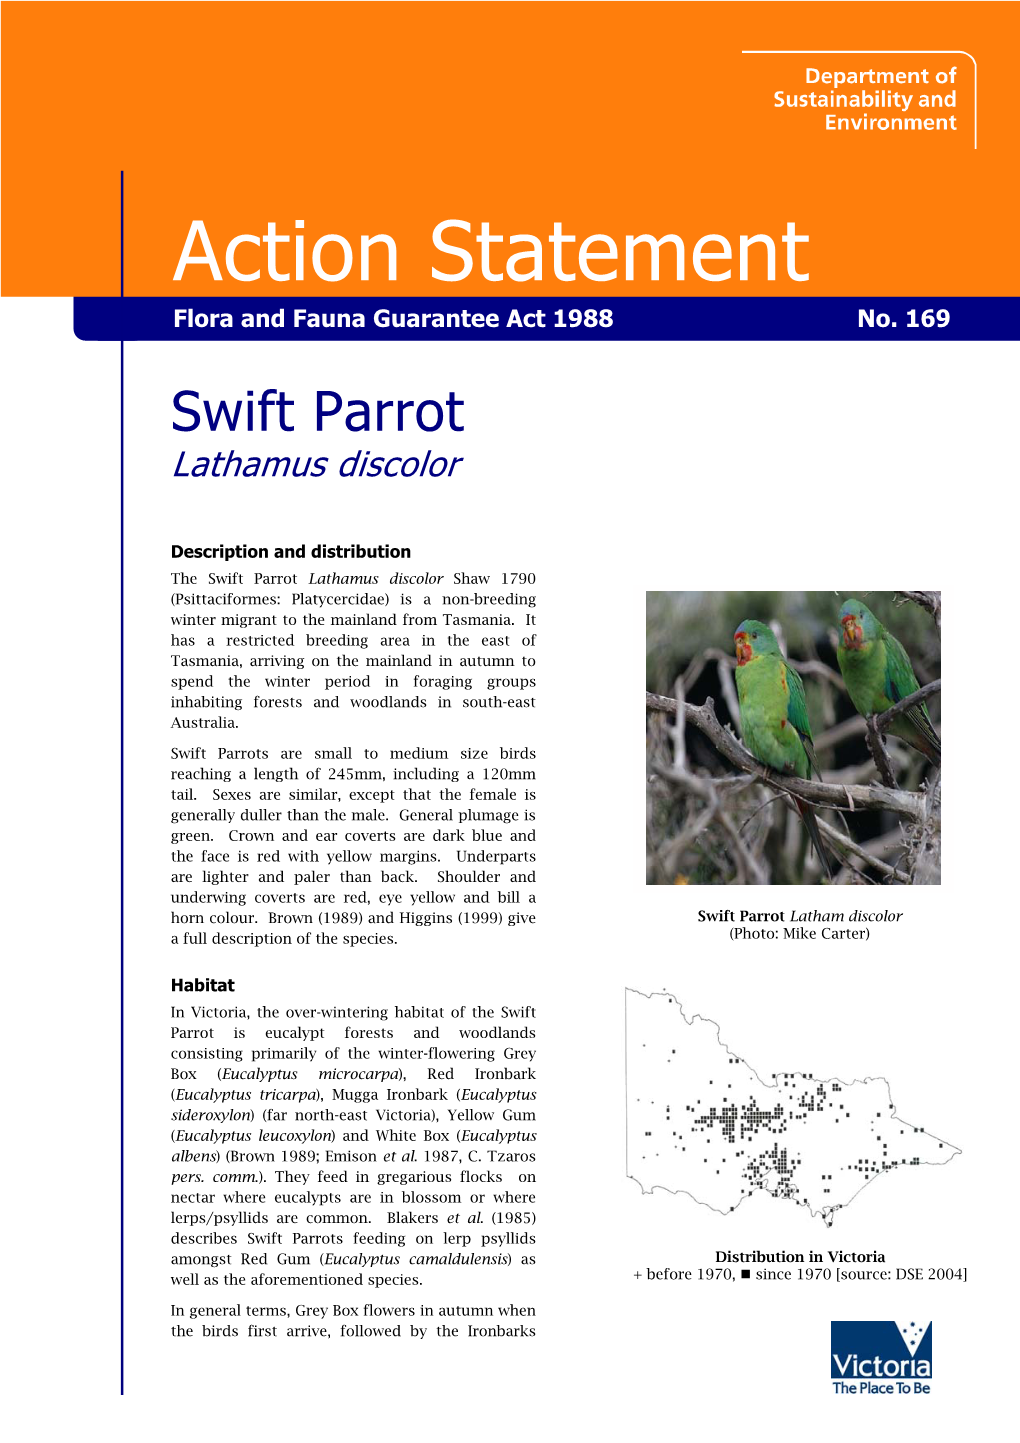 Swift Parrot (Lathamus Discolor)